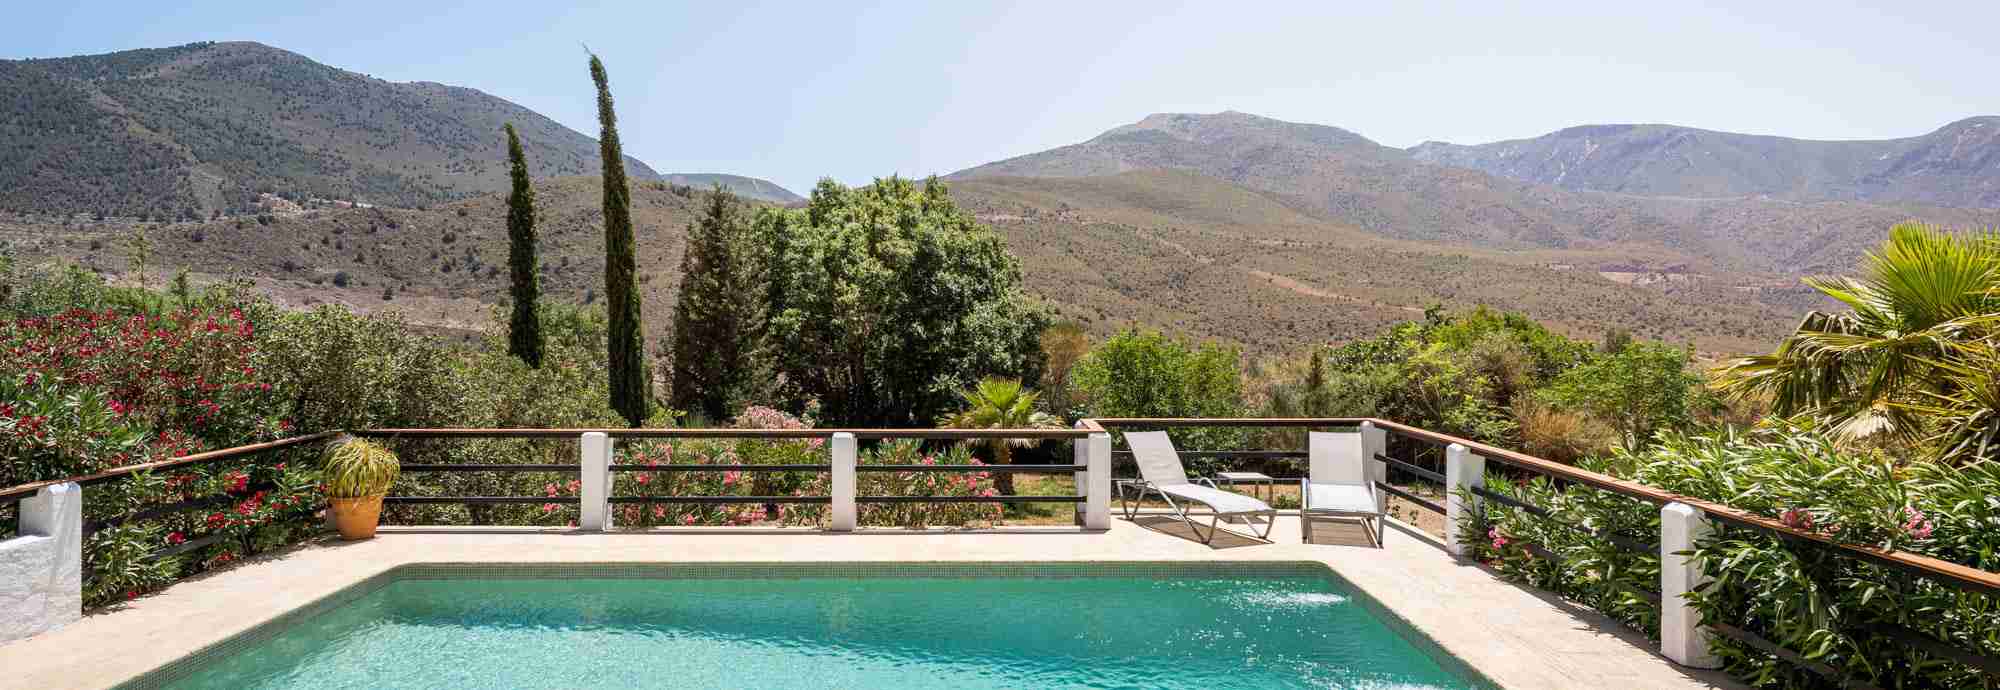 Atractivo cortijo totalmente privado en La Alpujarra con piscina, jardines y vistas